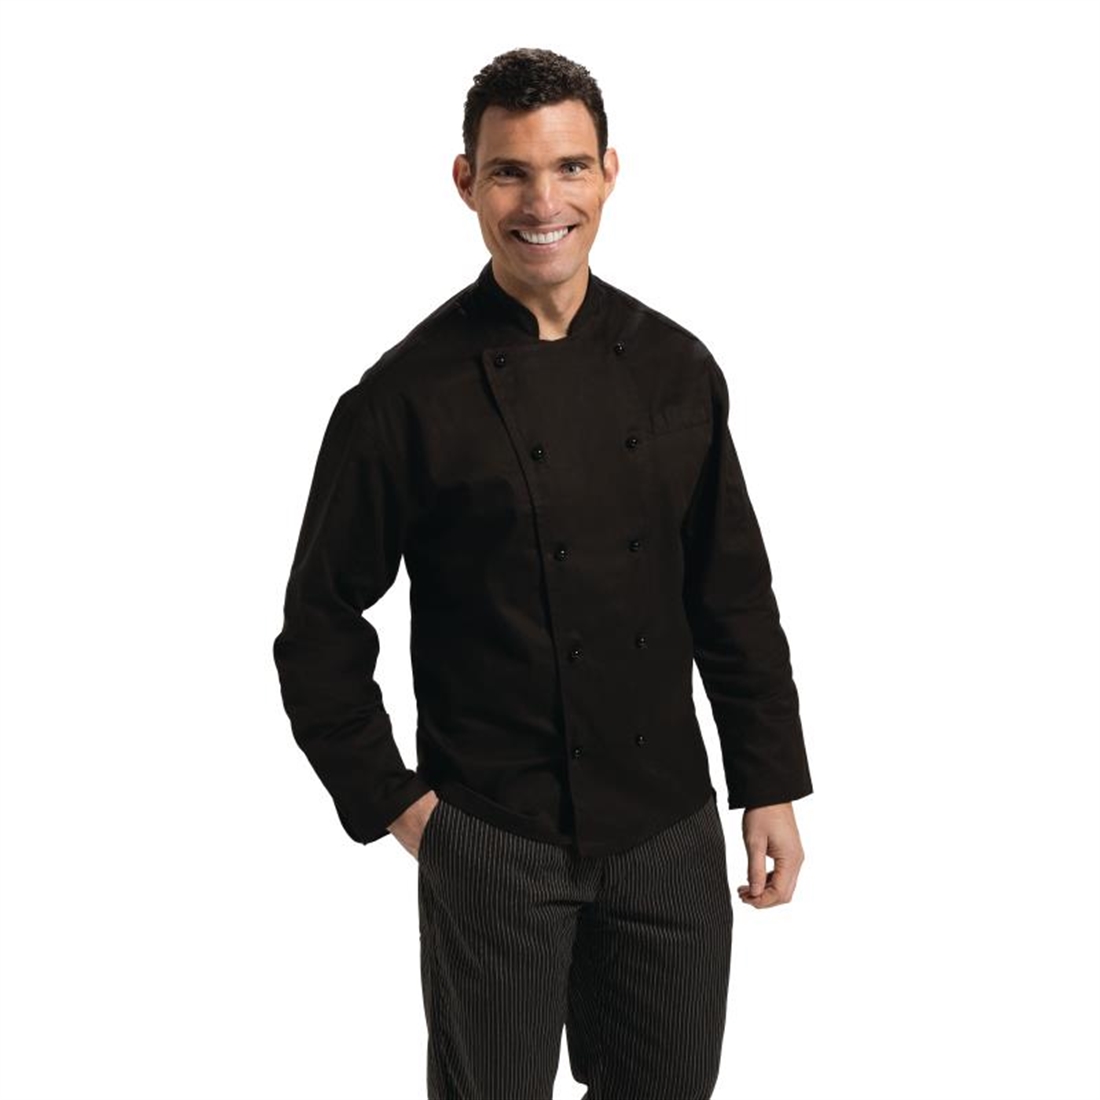 Whites Vegas Chef Jacket Short Sleeve Black - XL